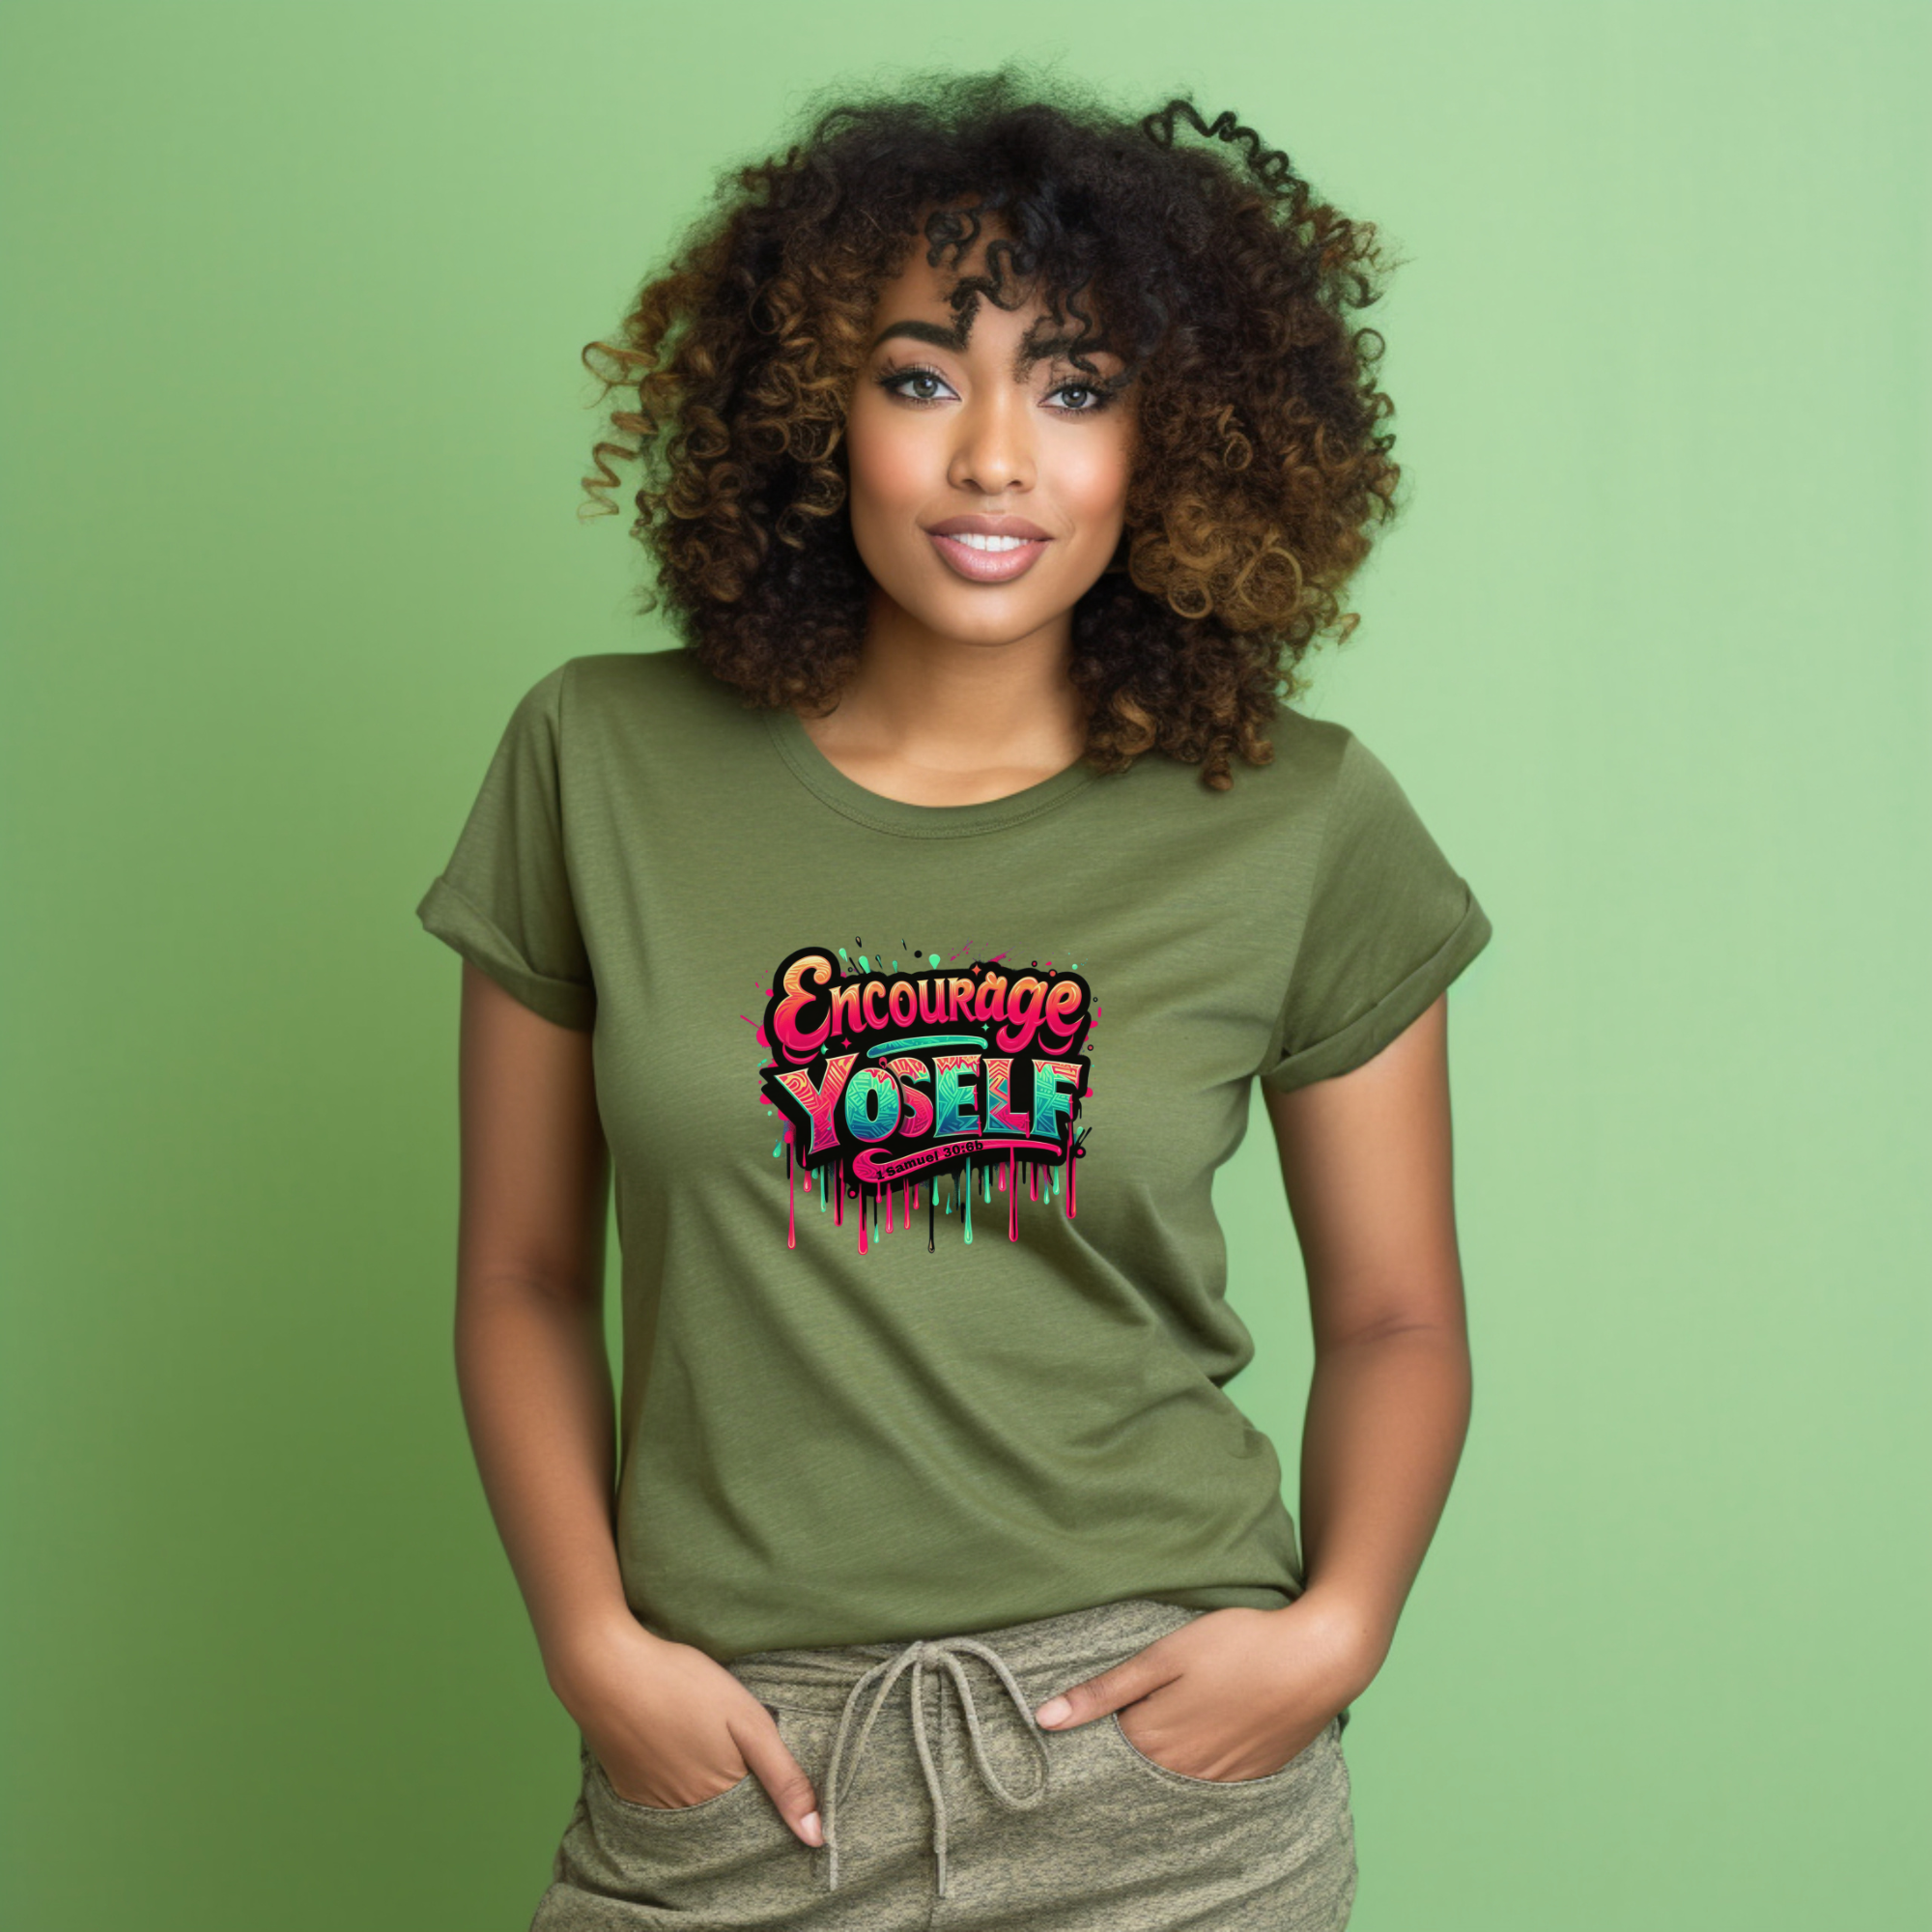 Encourage Yo'self Women's T-Shirt